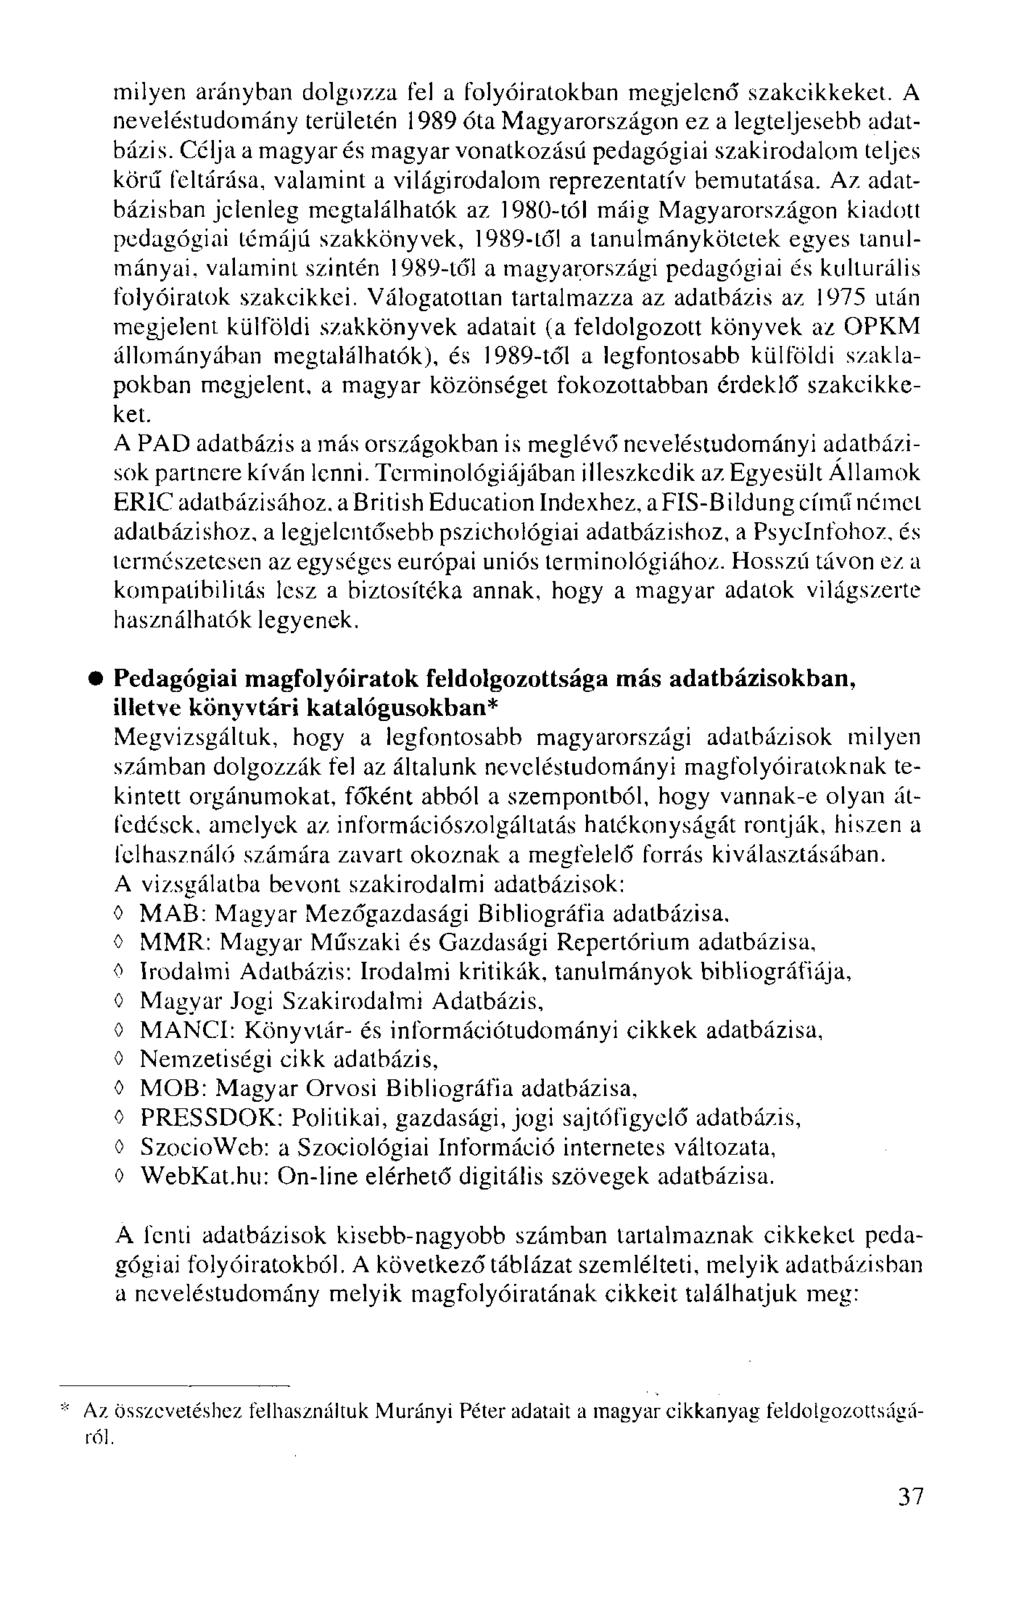 milyen arányban dolgozza fel a folyóiratokban megjelenő szakcikkeket. A neveléstudomány területén 1989 óta Magyarországon ez a legteljesebb adatbázis.